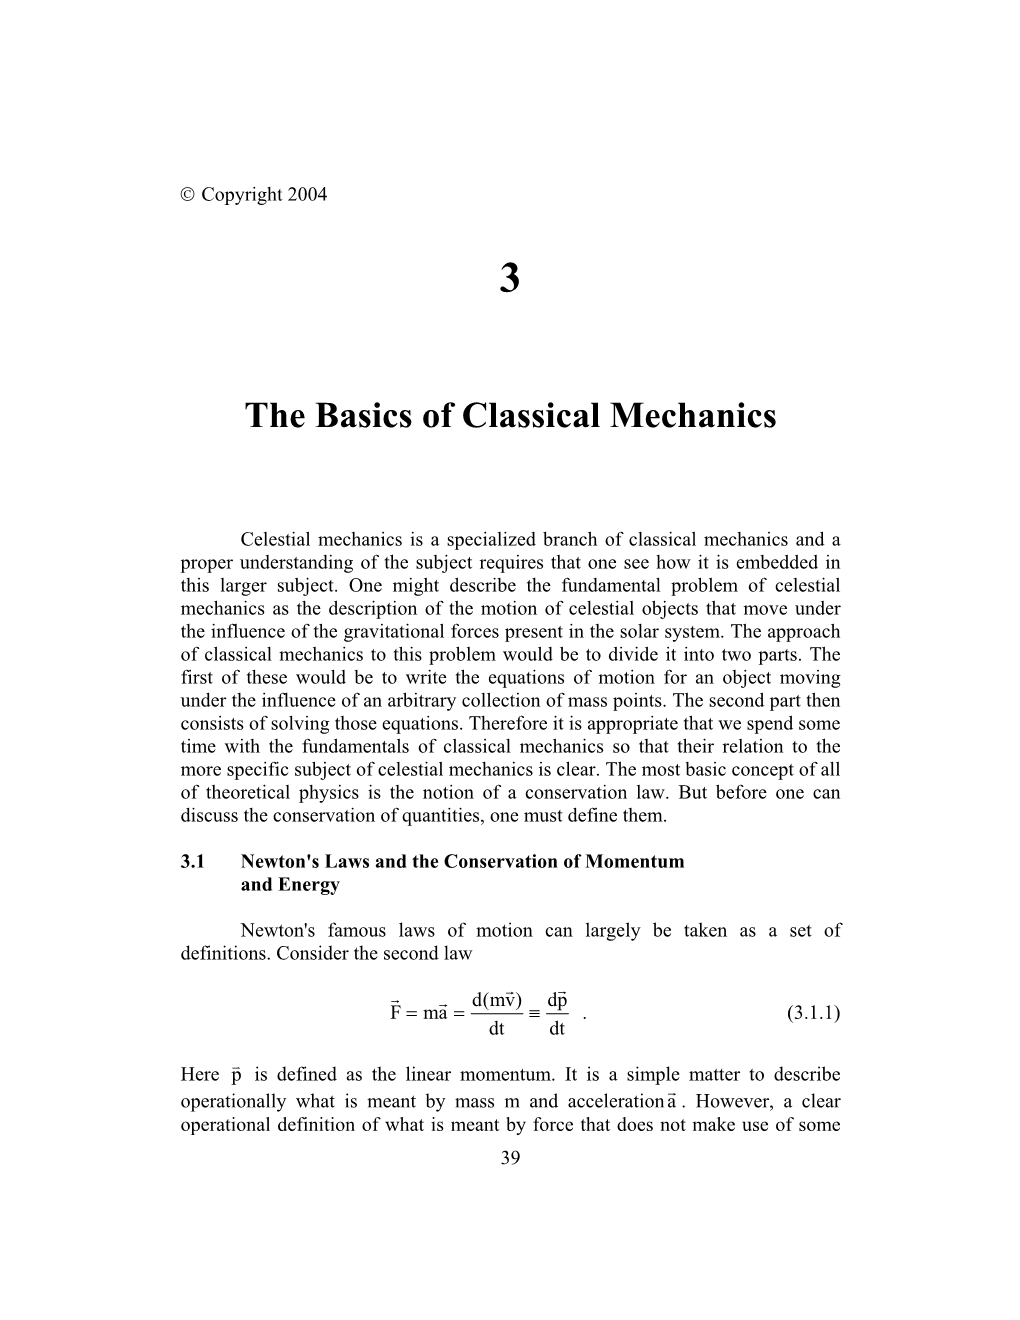 The Basics of Classical Mechanics